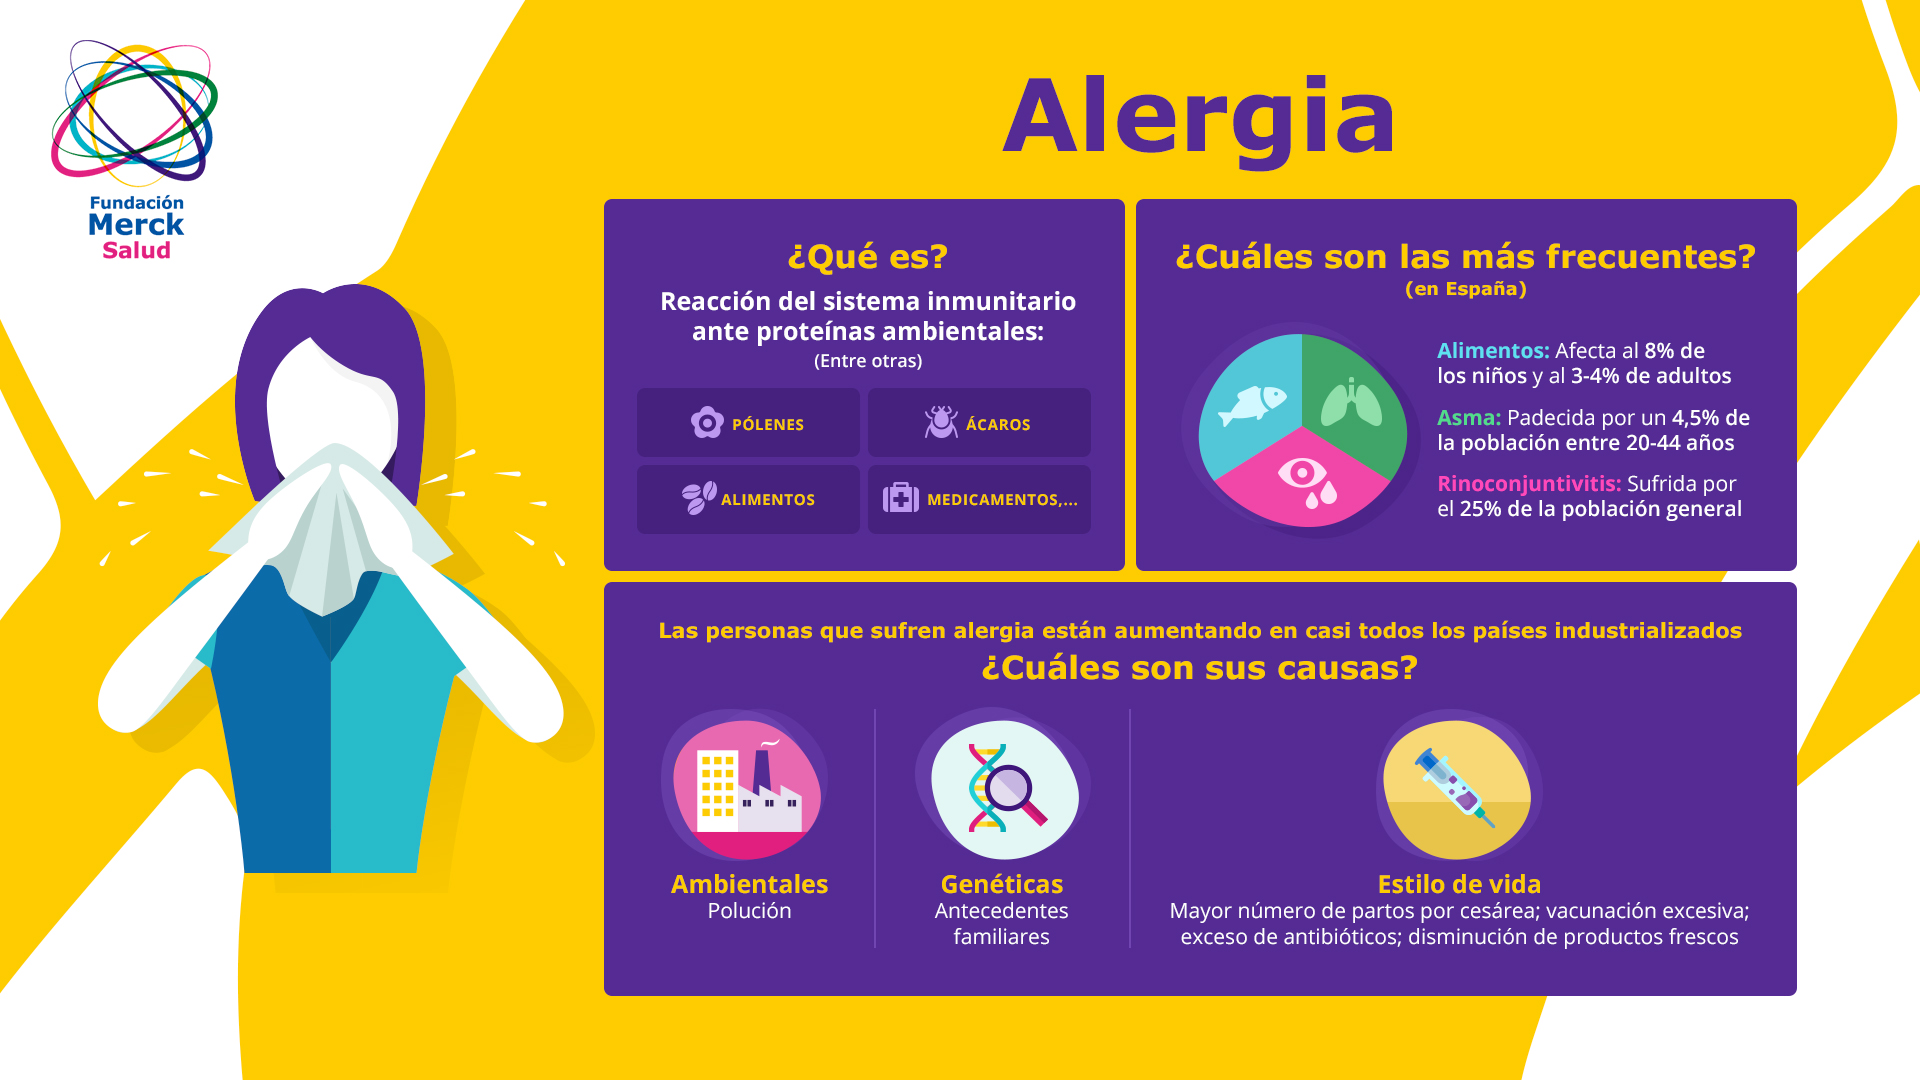 Advertencia sobre posibles reacciones alérgicas